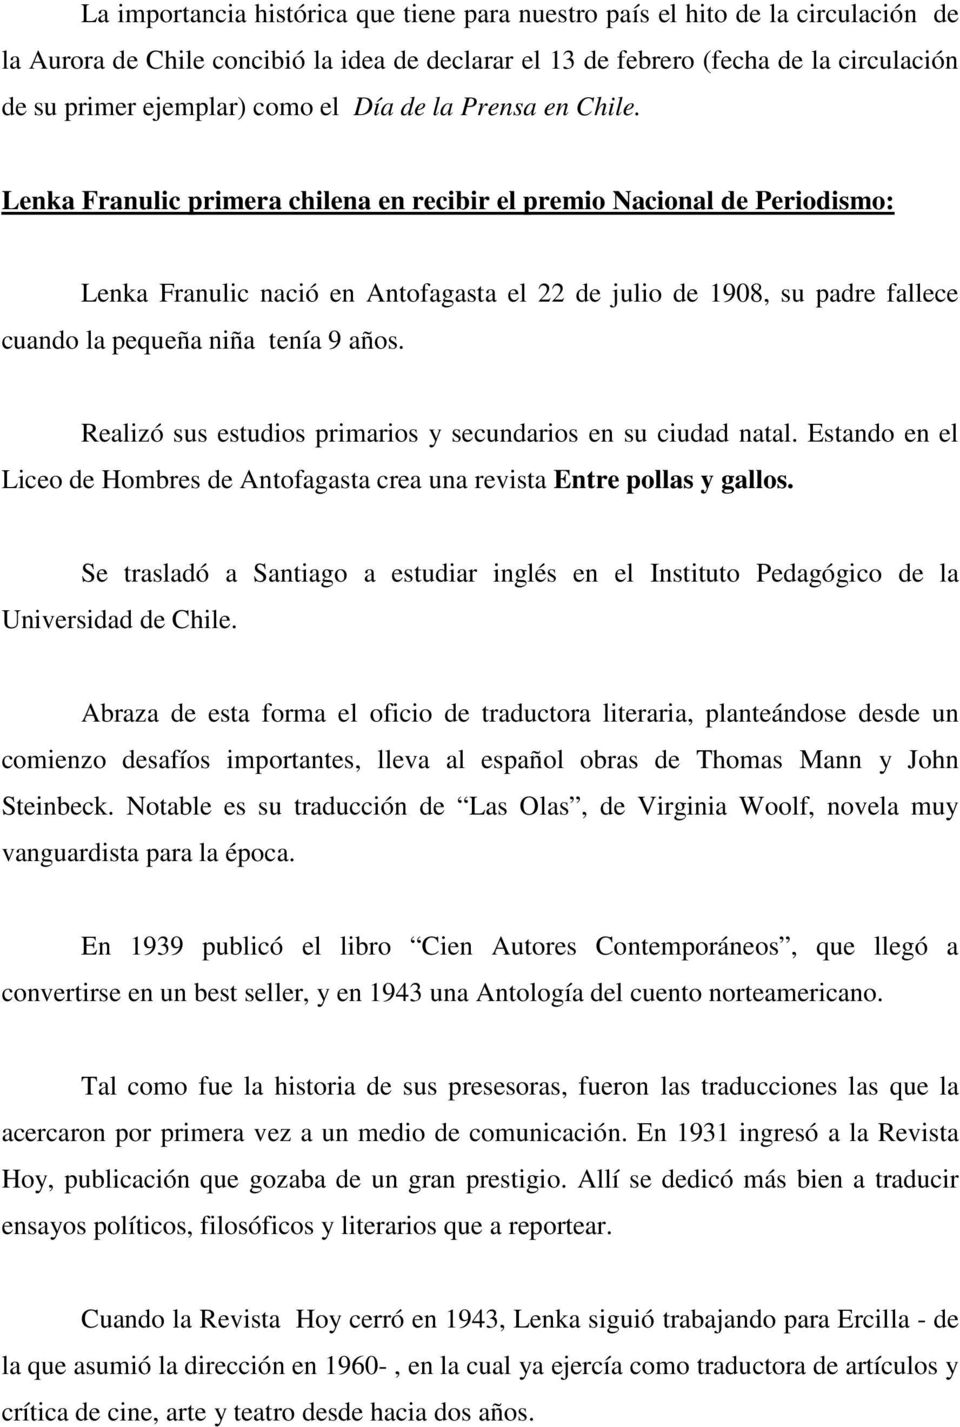 Lenka Franulic primera chilena en recibir el premio Nacional de Periodismo: Lenka Franulic nació en Antofagasta el 22 de julio de 1908, su padre fallece cuando la pequeña niña tenía 9 años.